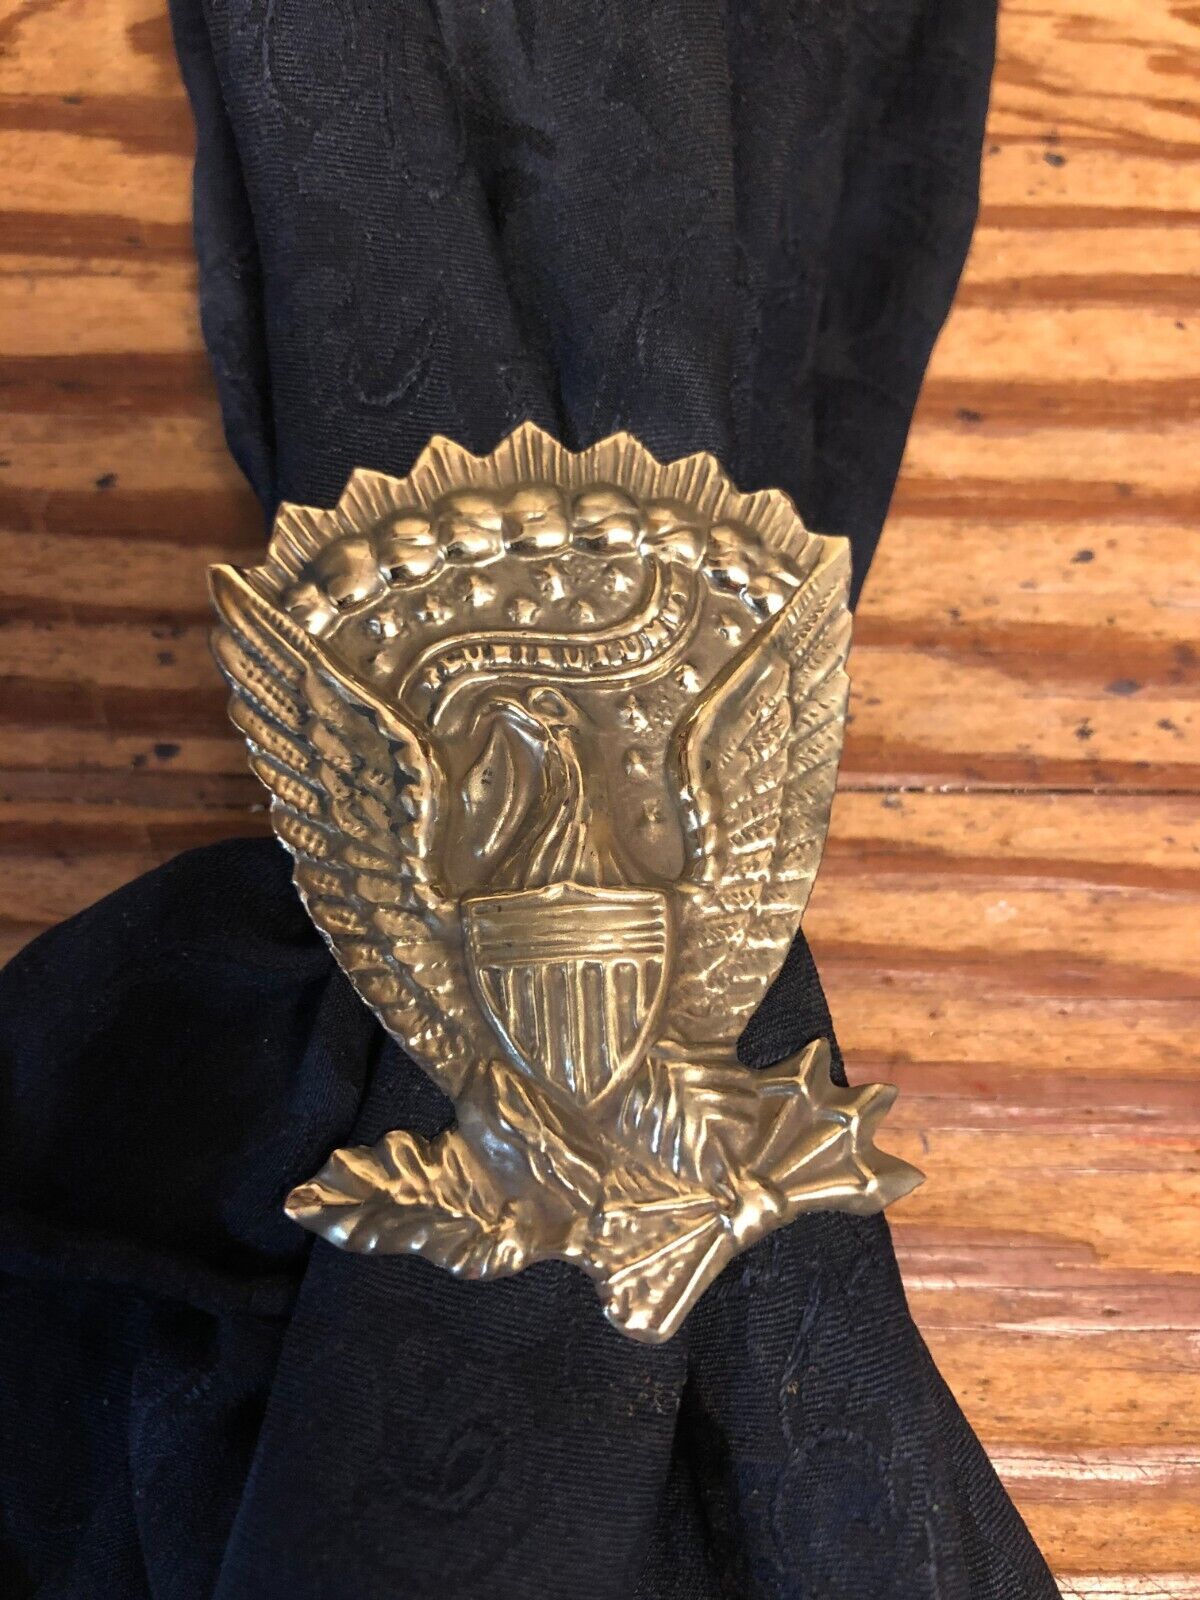 Scarf Slide / Wild Rag Slide: Jefferson Davis hat pin, brass